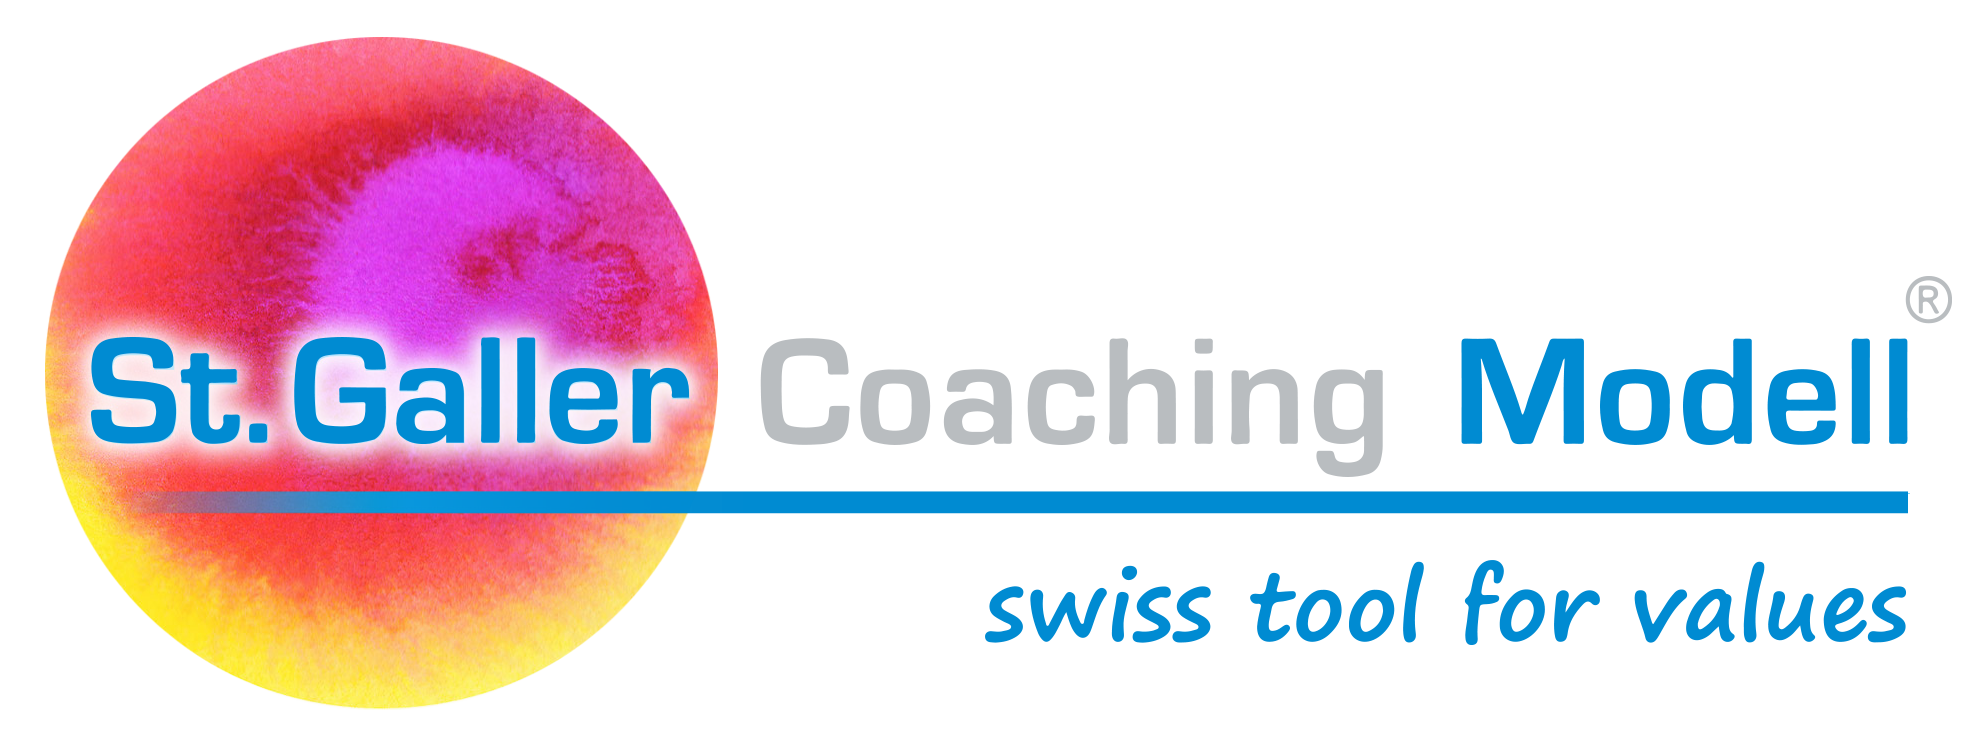 St. Galler Coaching Modell Logo